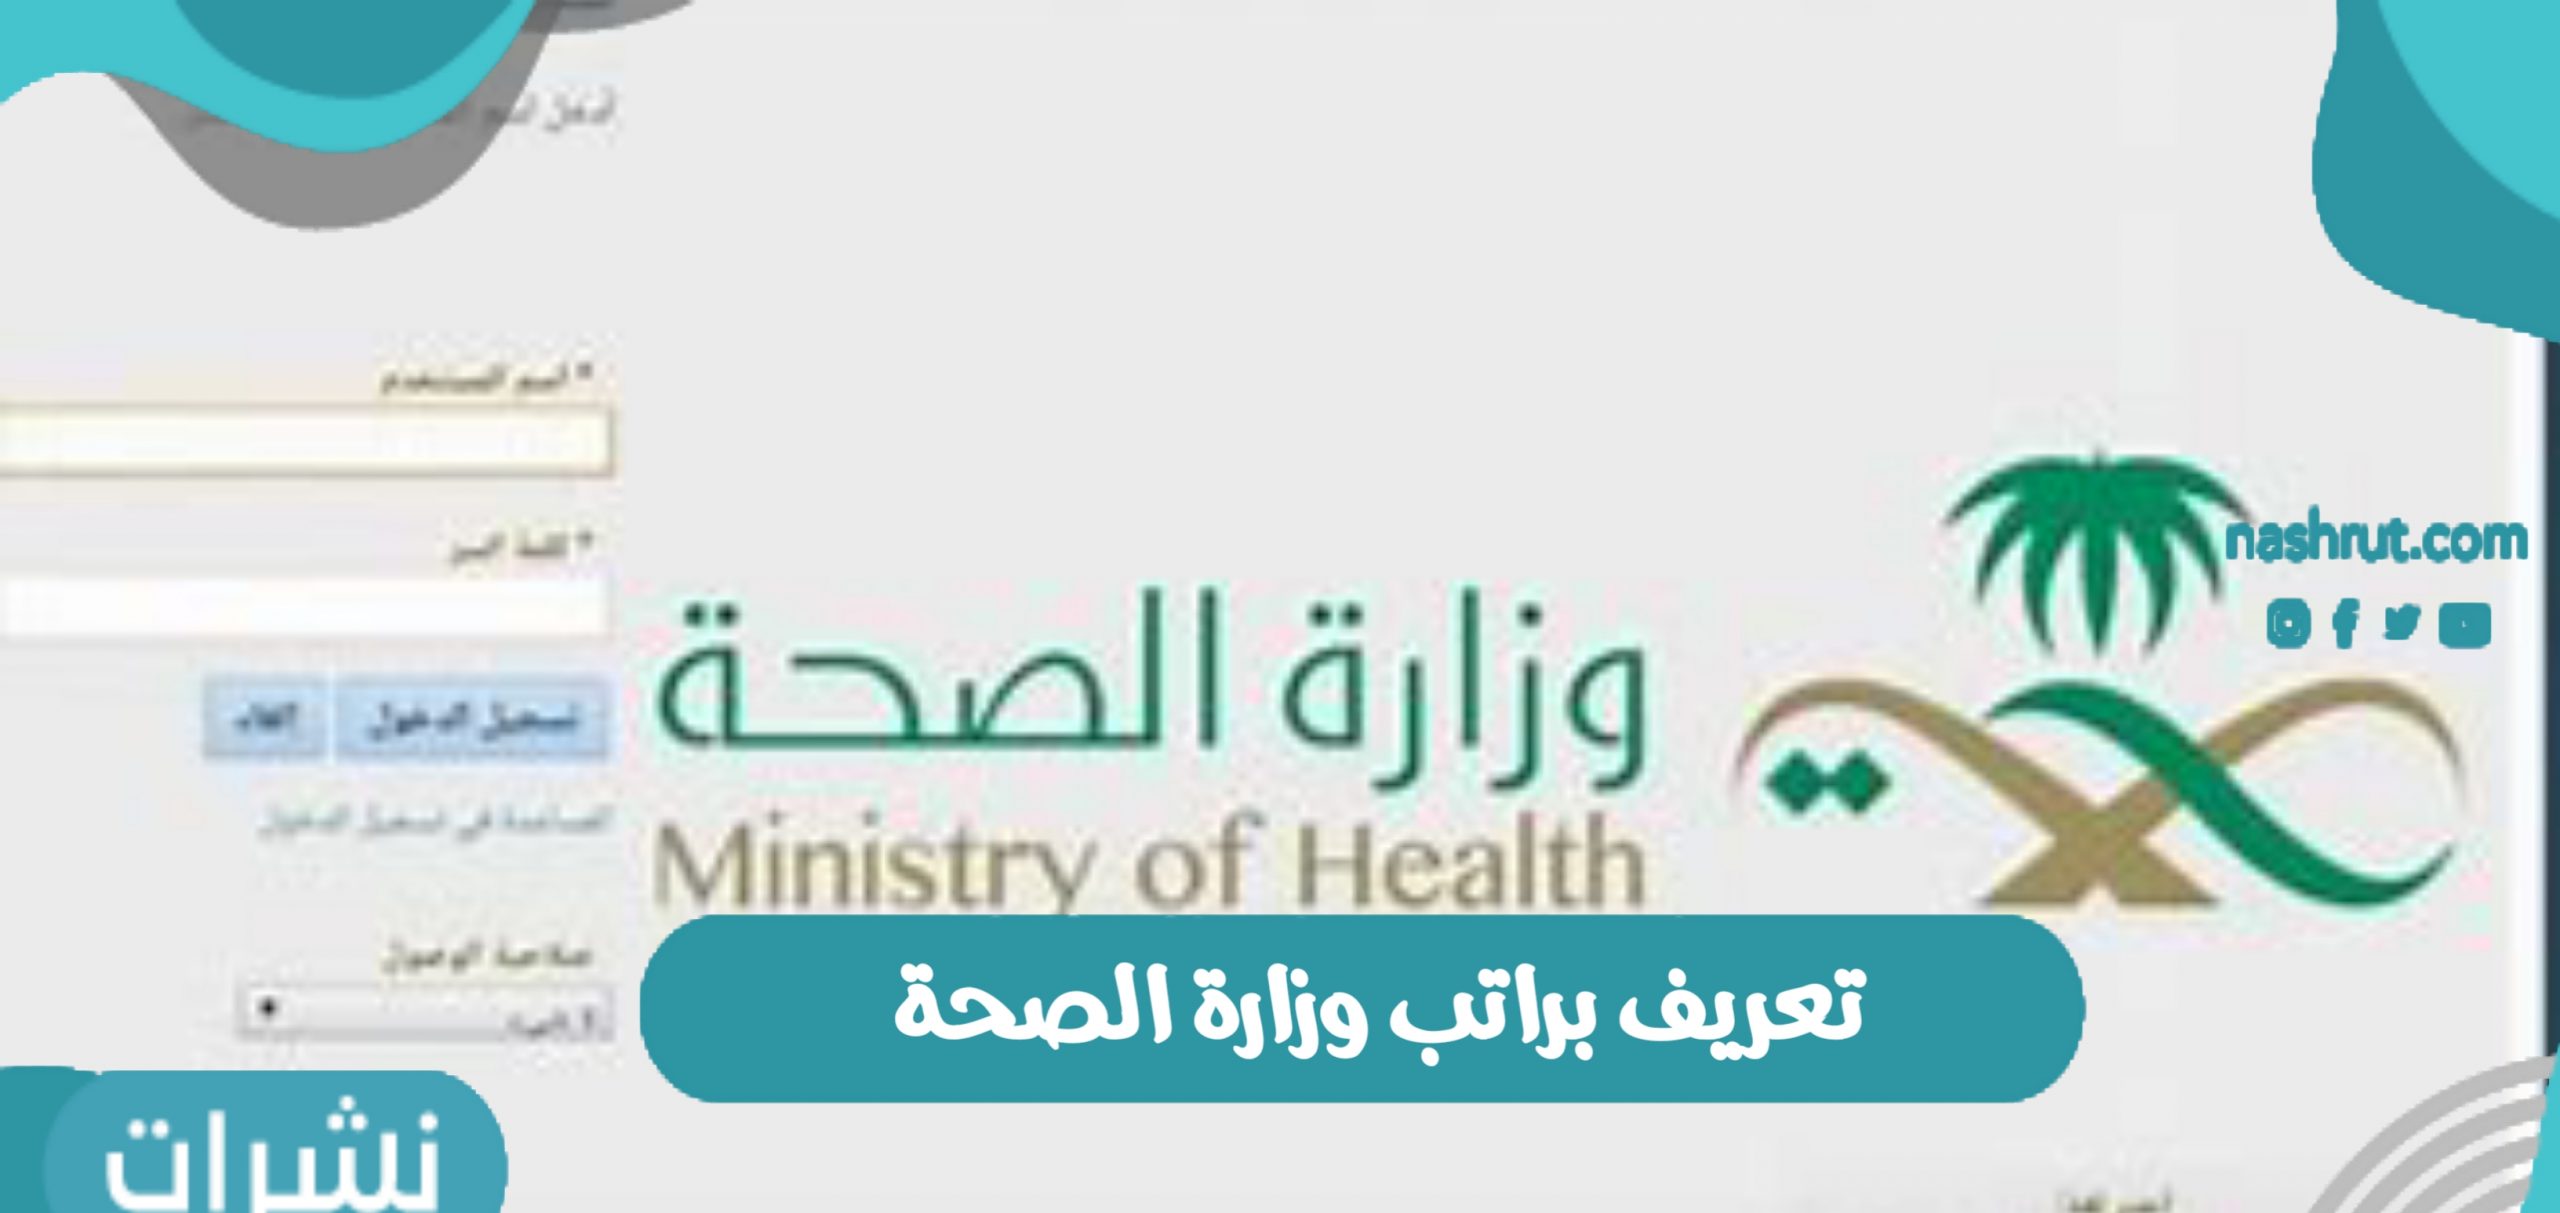 تعريف براتب وزارة الصحة في المملكة العربية السعودية 1442 نشرات